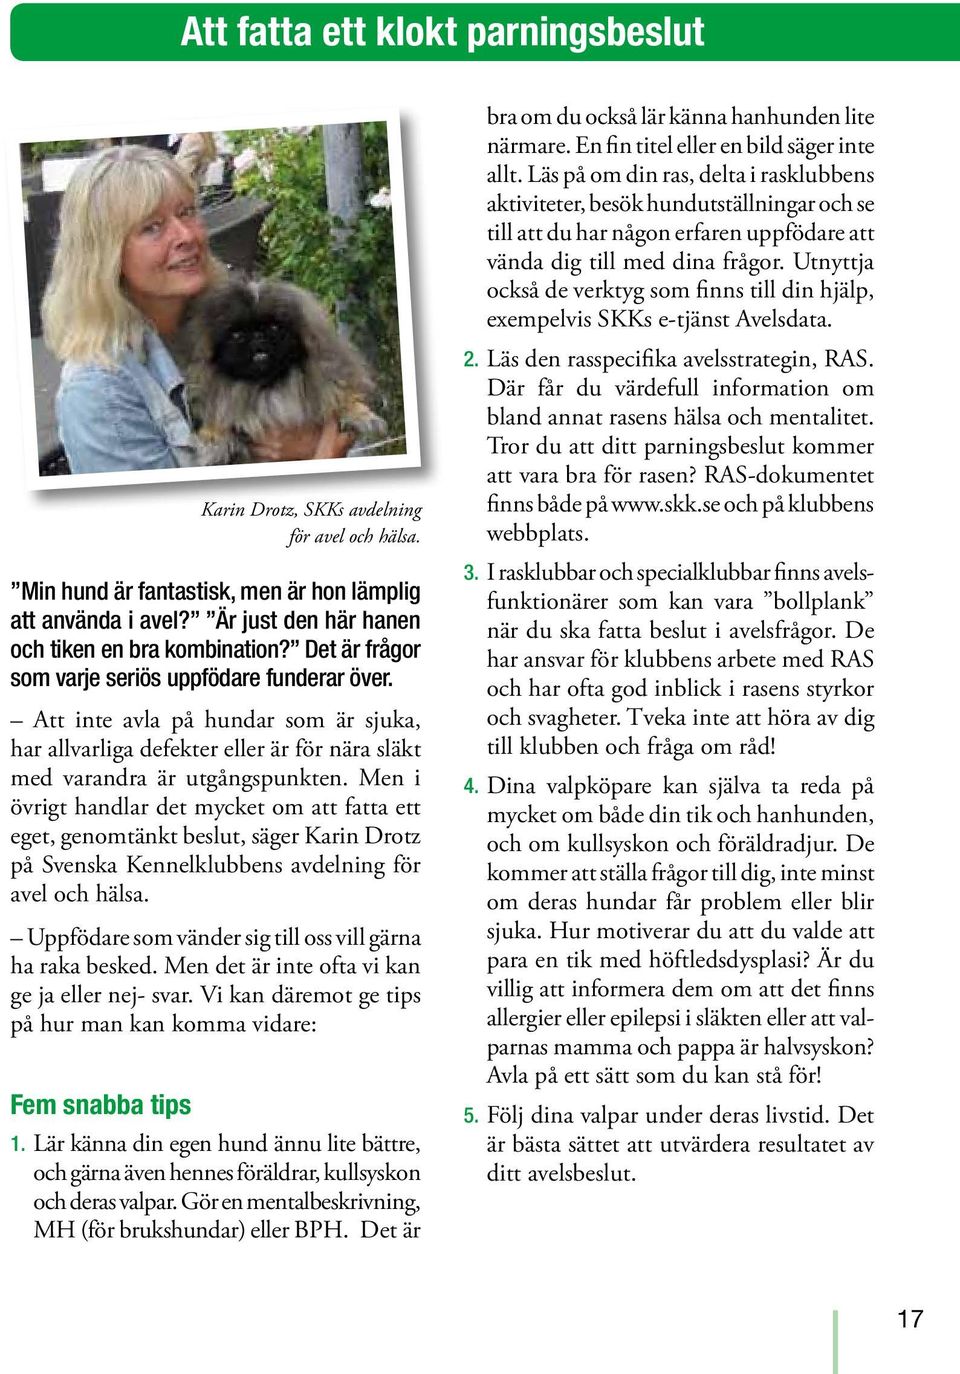 Men i övrigt handlar det mycket om att fatta ett eget, genomtänkt beslut, säger Karin Drotz på Svenska Kennelklubbens avdelning för avel och hälsa.